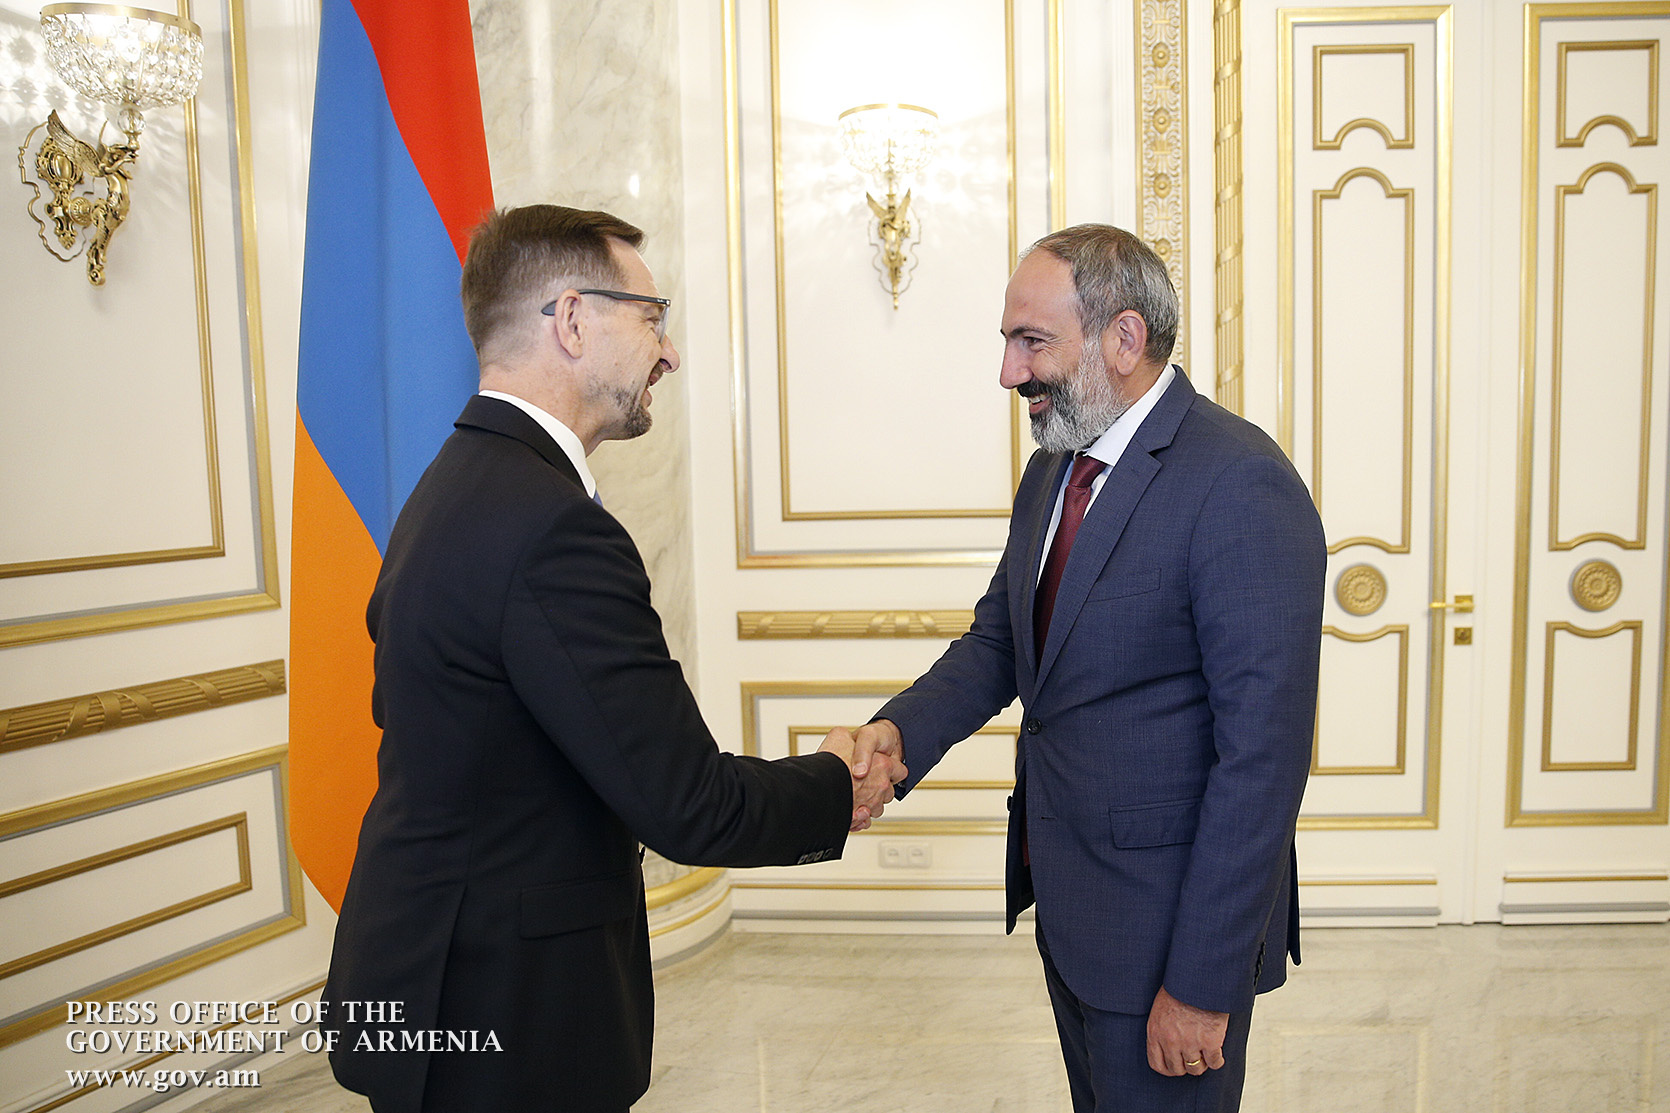 ОБСЕ готово поддержать повестку правительства Армении по проведению реформ